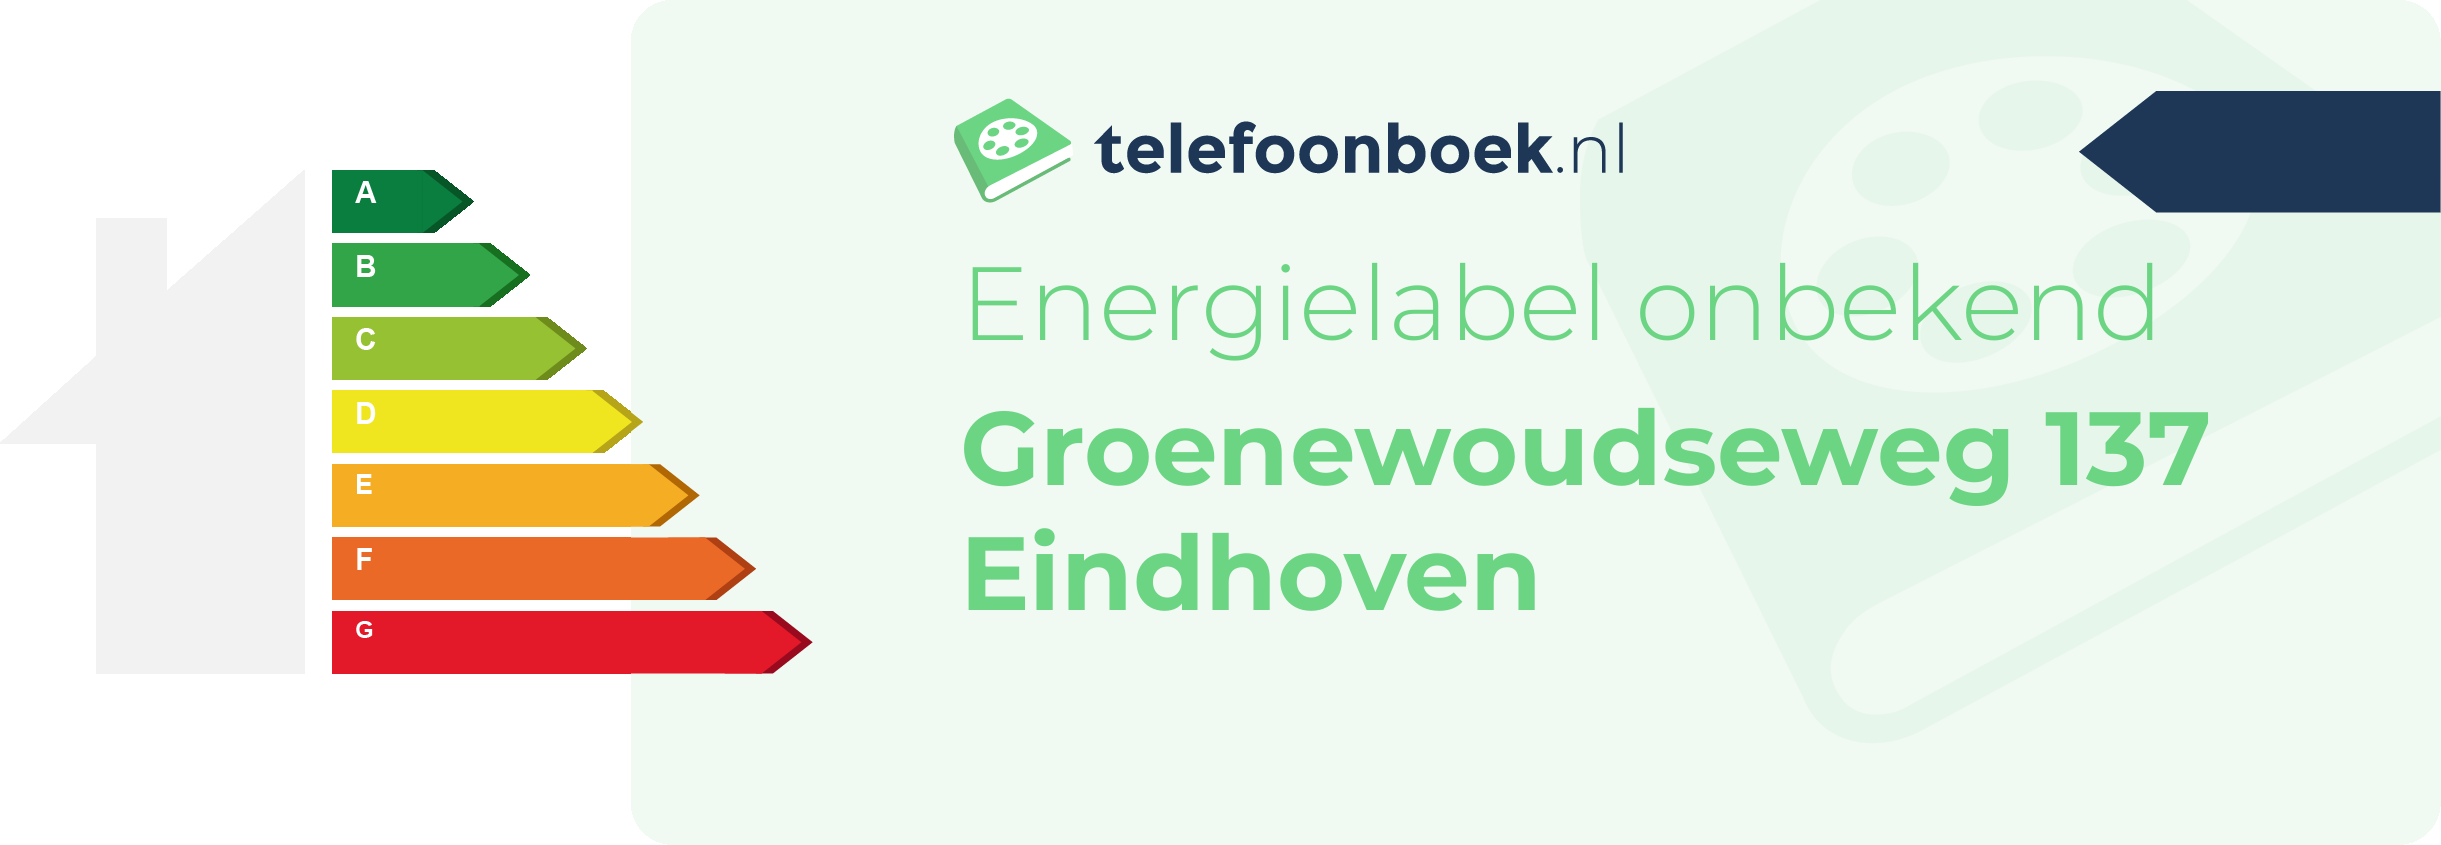 Energielabel Groenewoudseweg 137 Eindhoven